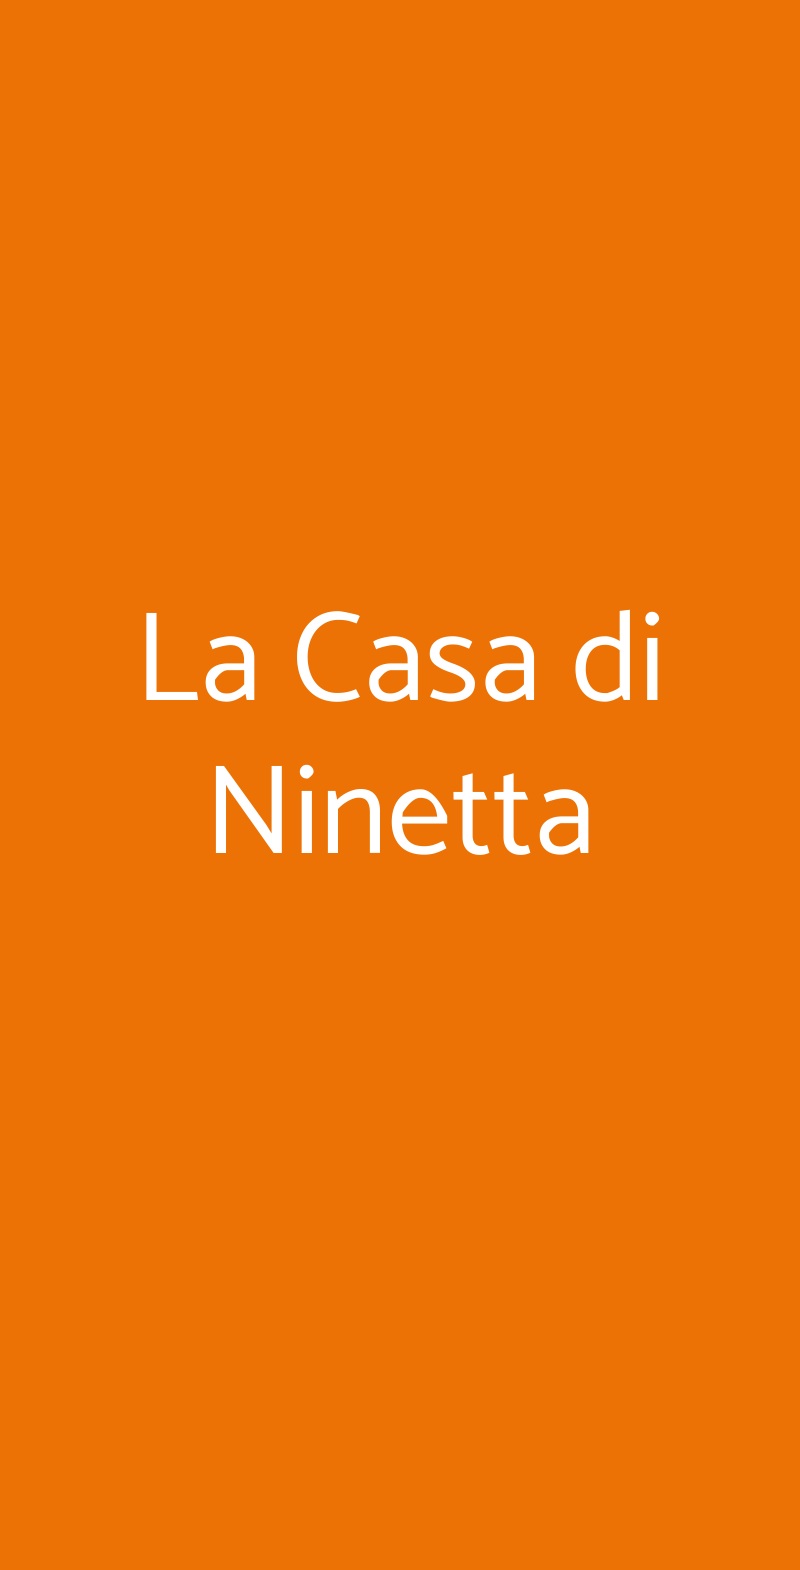 La Casa di Ninetta Napoli menù 1 pagina